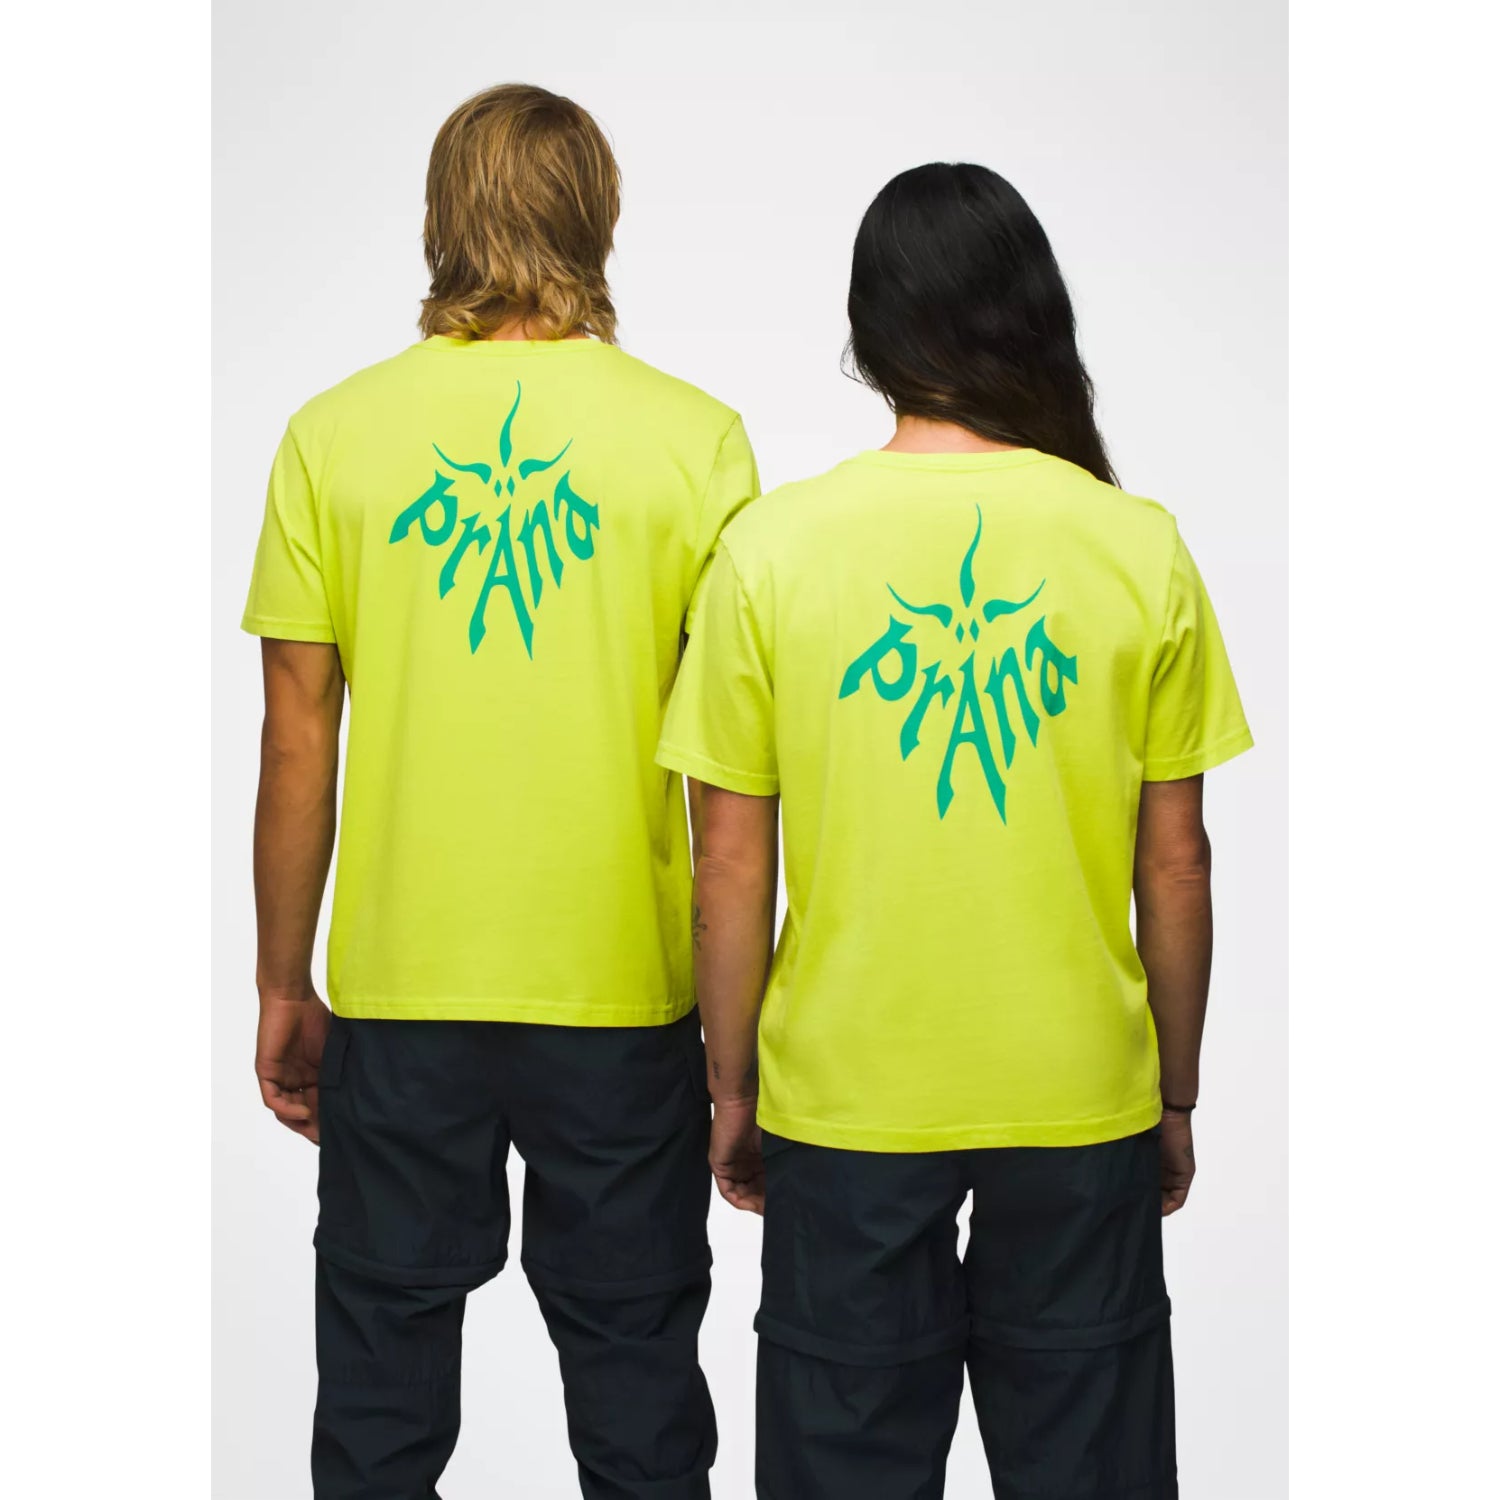 Prana Heritage Graphic T-Shirt - Bright Lichen - Unisex